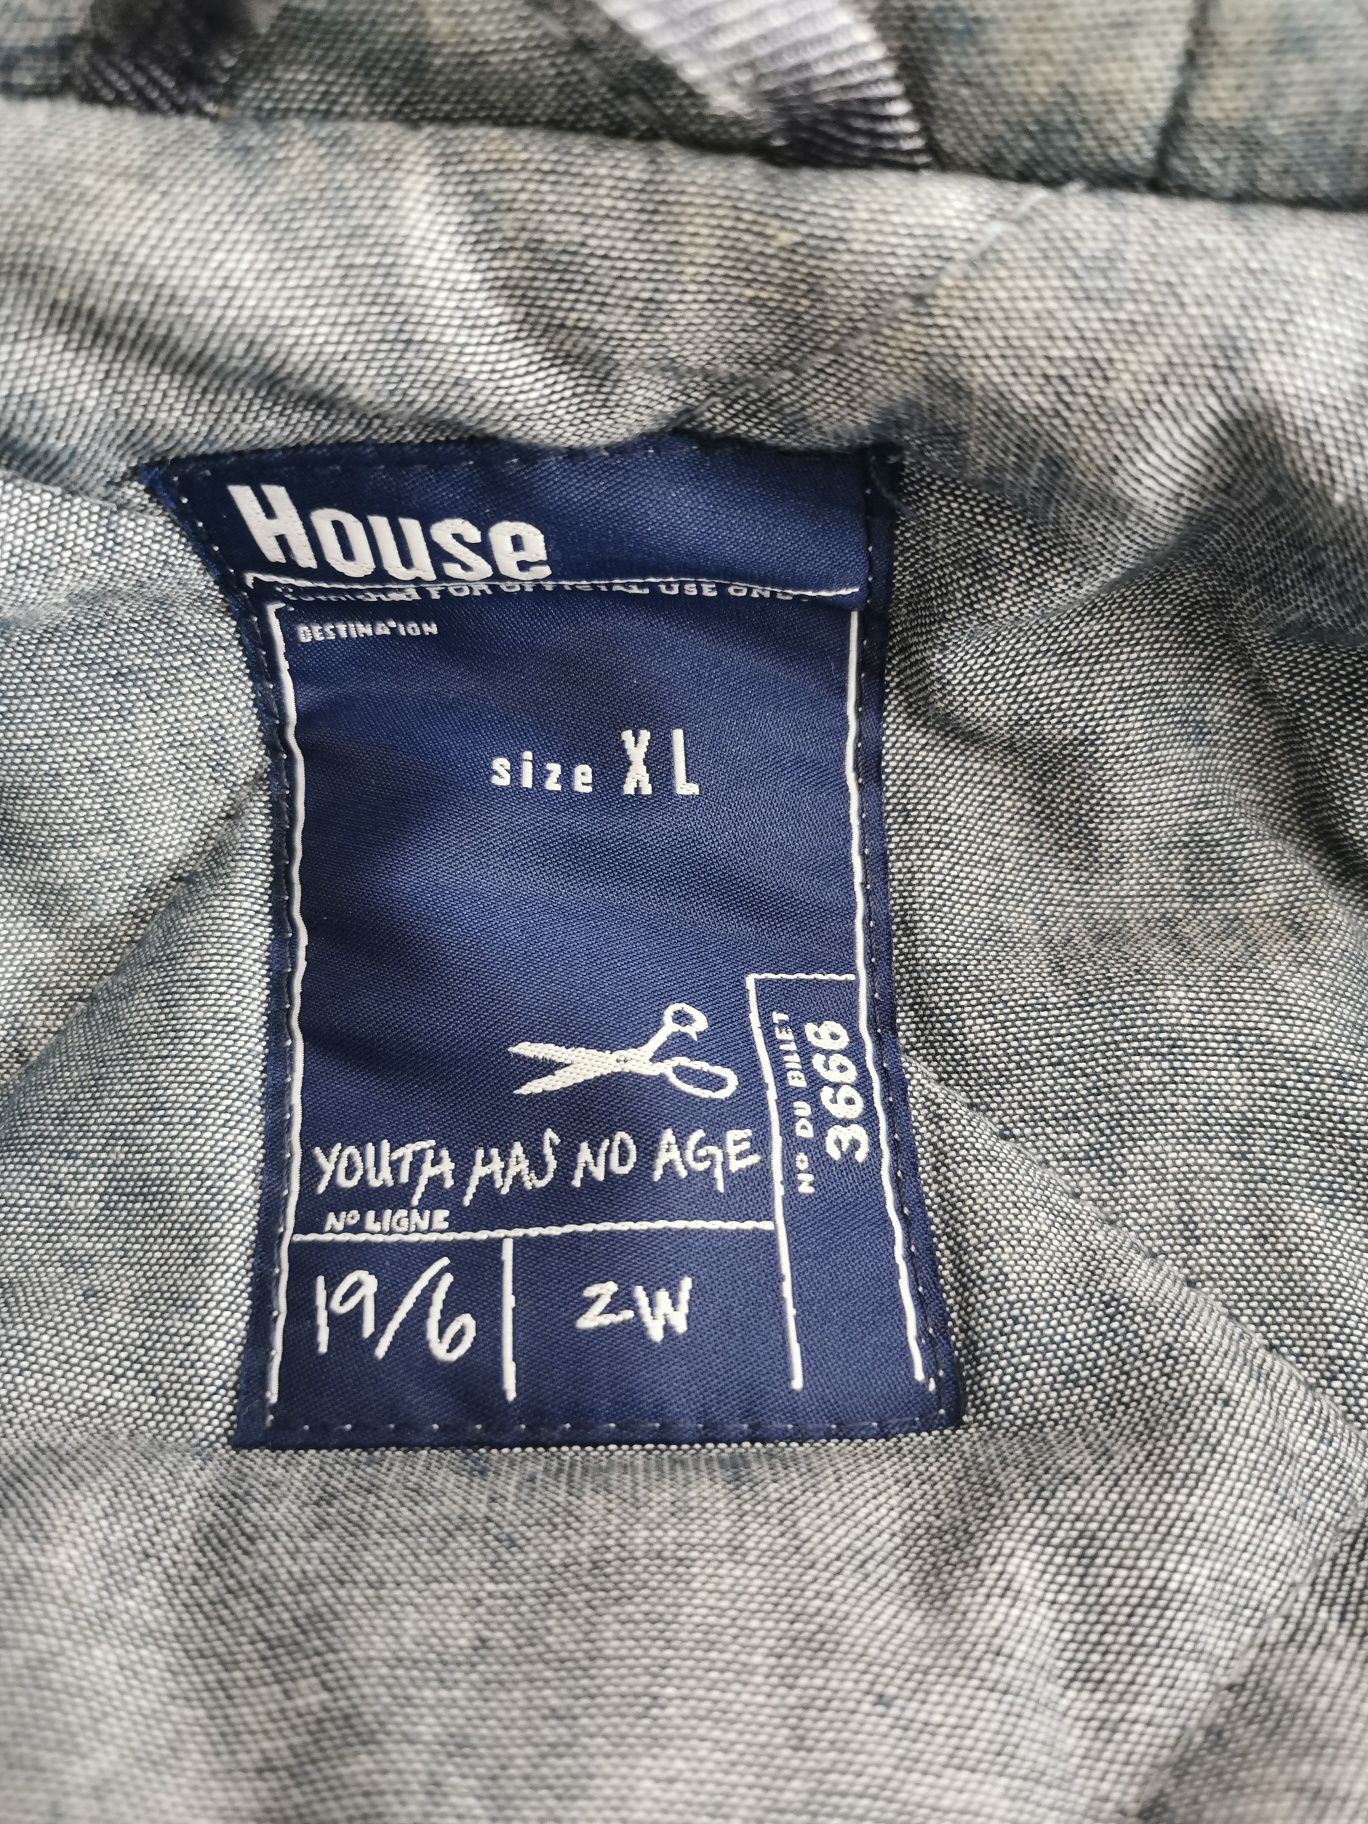 Męska kurtka/płaszczyk zimowy, House XL